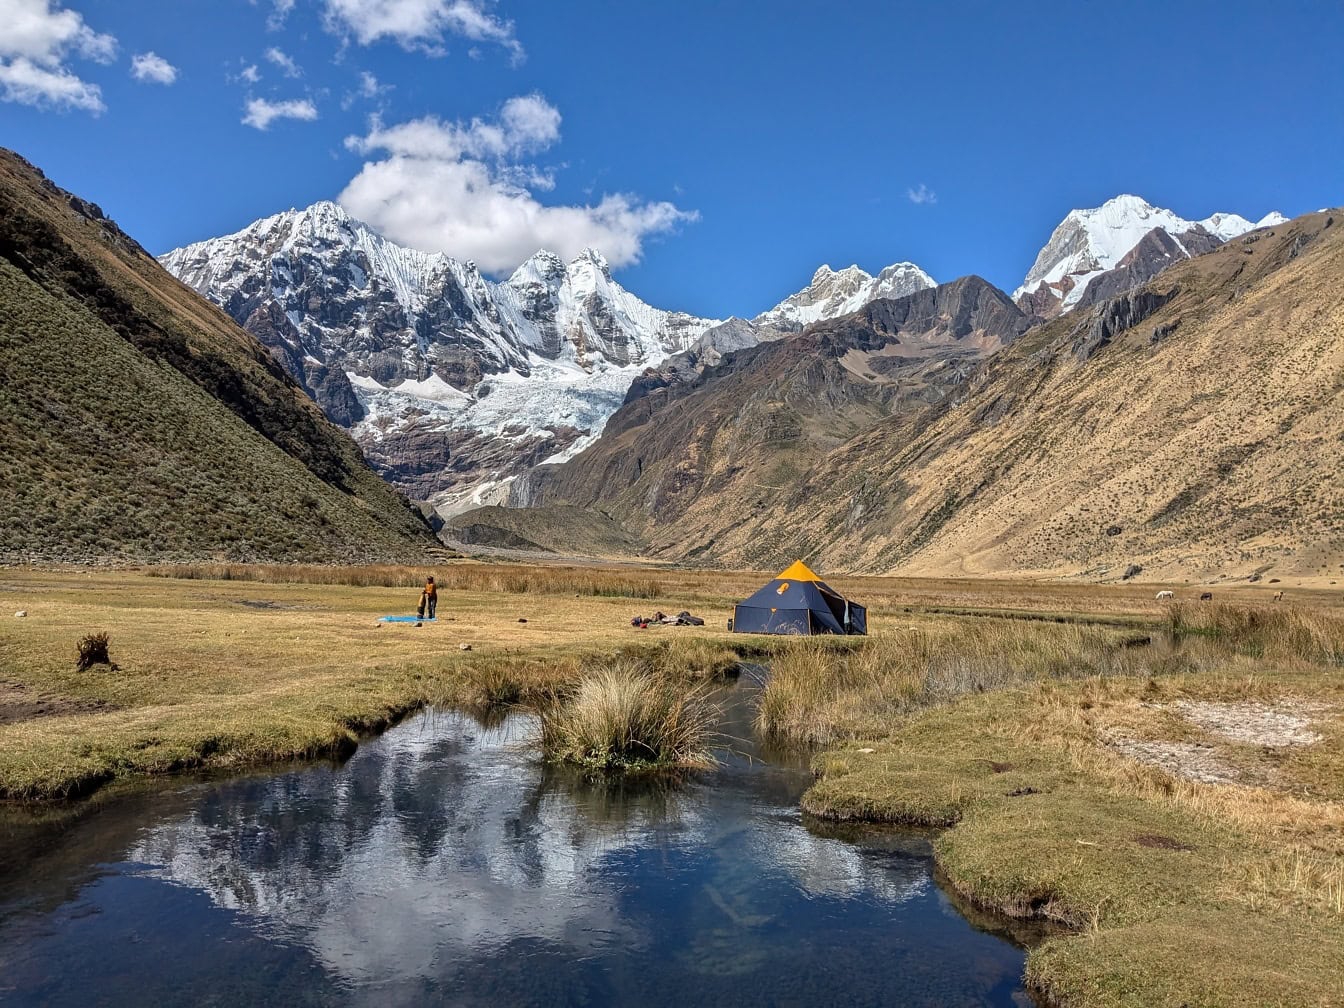 Tienda de campaña en la orilla de un río en un valle con la Cordillera Huayhuash, una cadena montañosa en los Andes en Perú